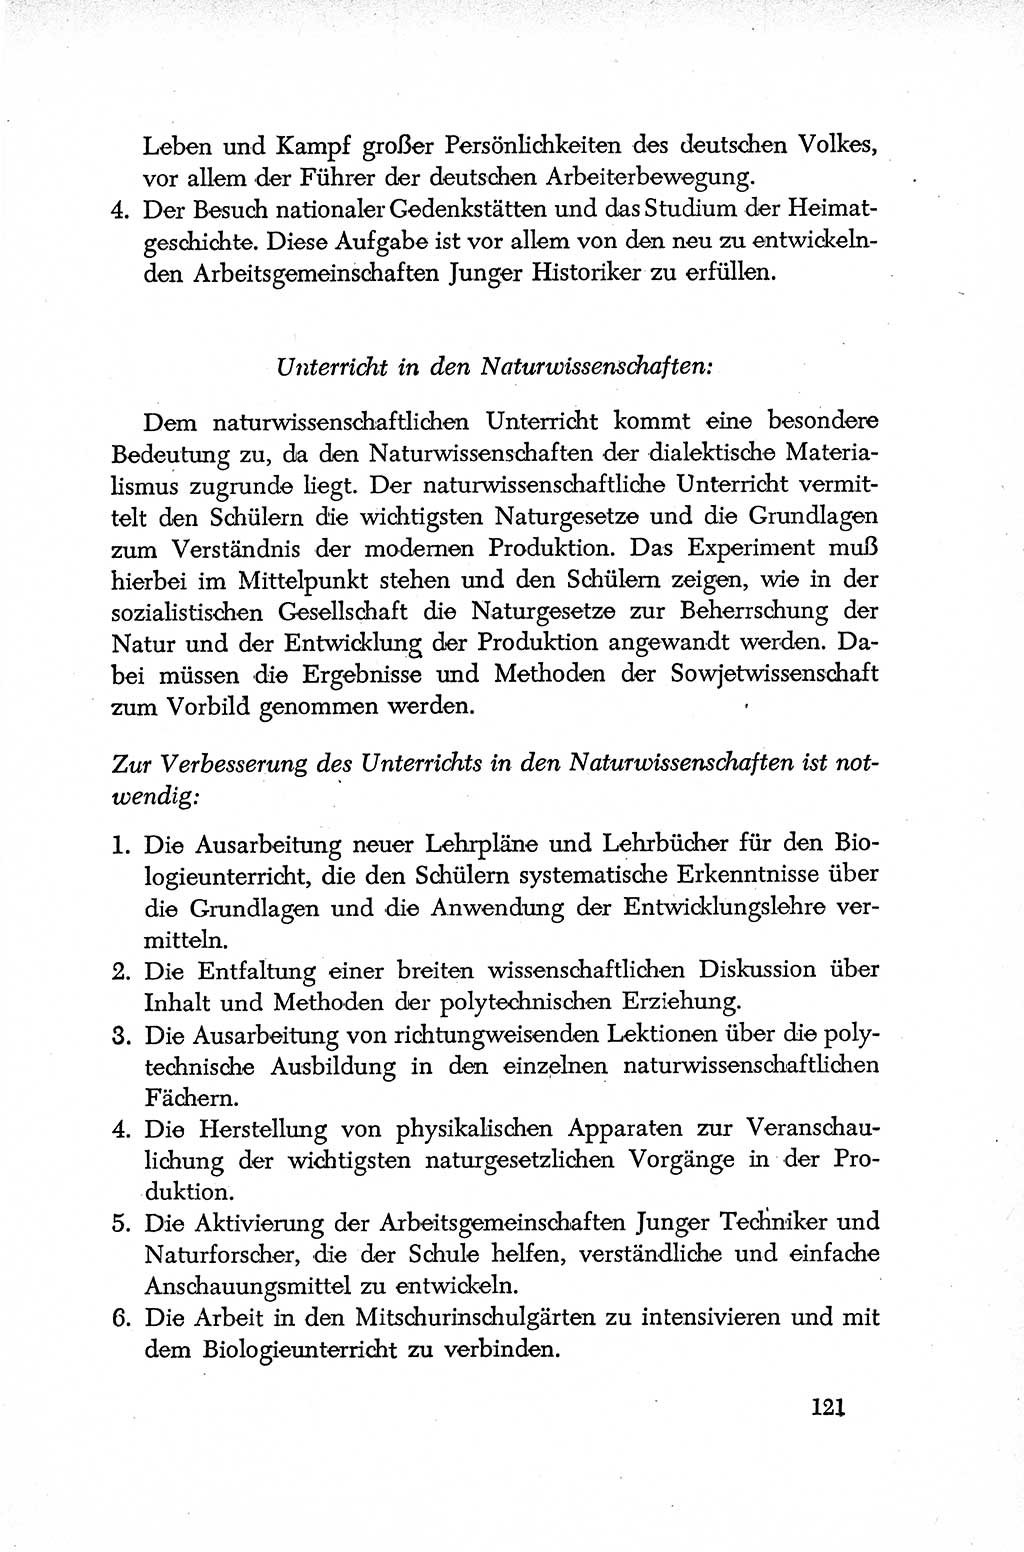 Dokumente der Sozialistischen Einheitspartei Deutschlands (SED) [Deutsche Demokratische Republik (DDR)] 1952-1953, Seite 121 (Dok. SED DDR 1952-1953, S. 121)